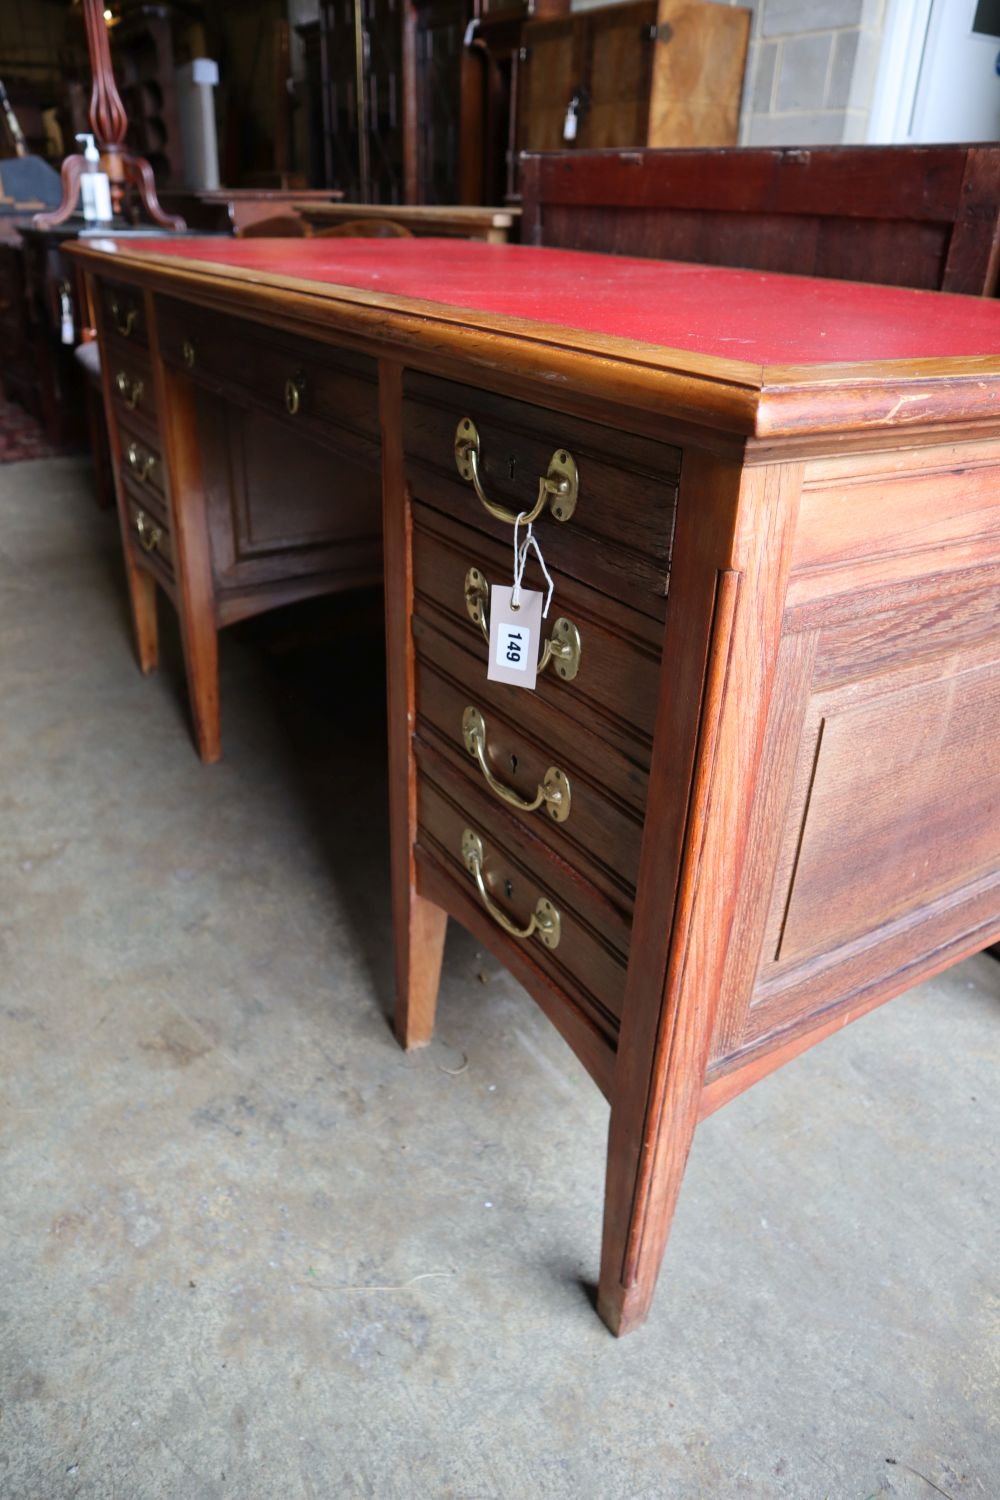 An Edwardian oak and walnut desk, width 160cm depth 74cm height 76cm